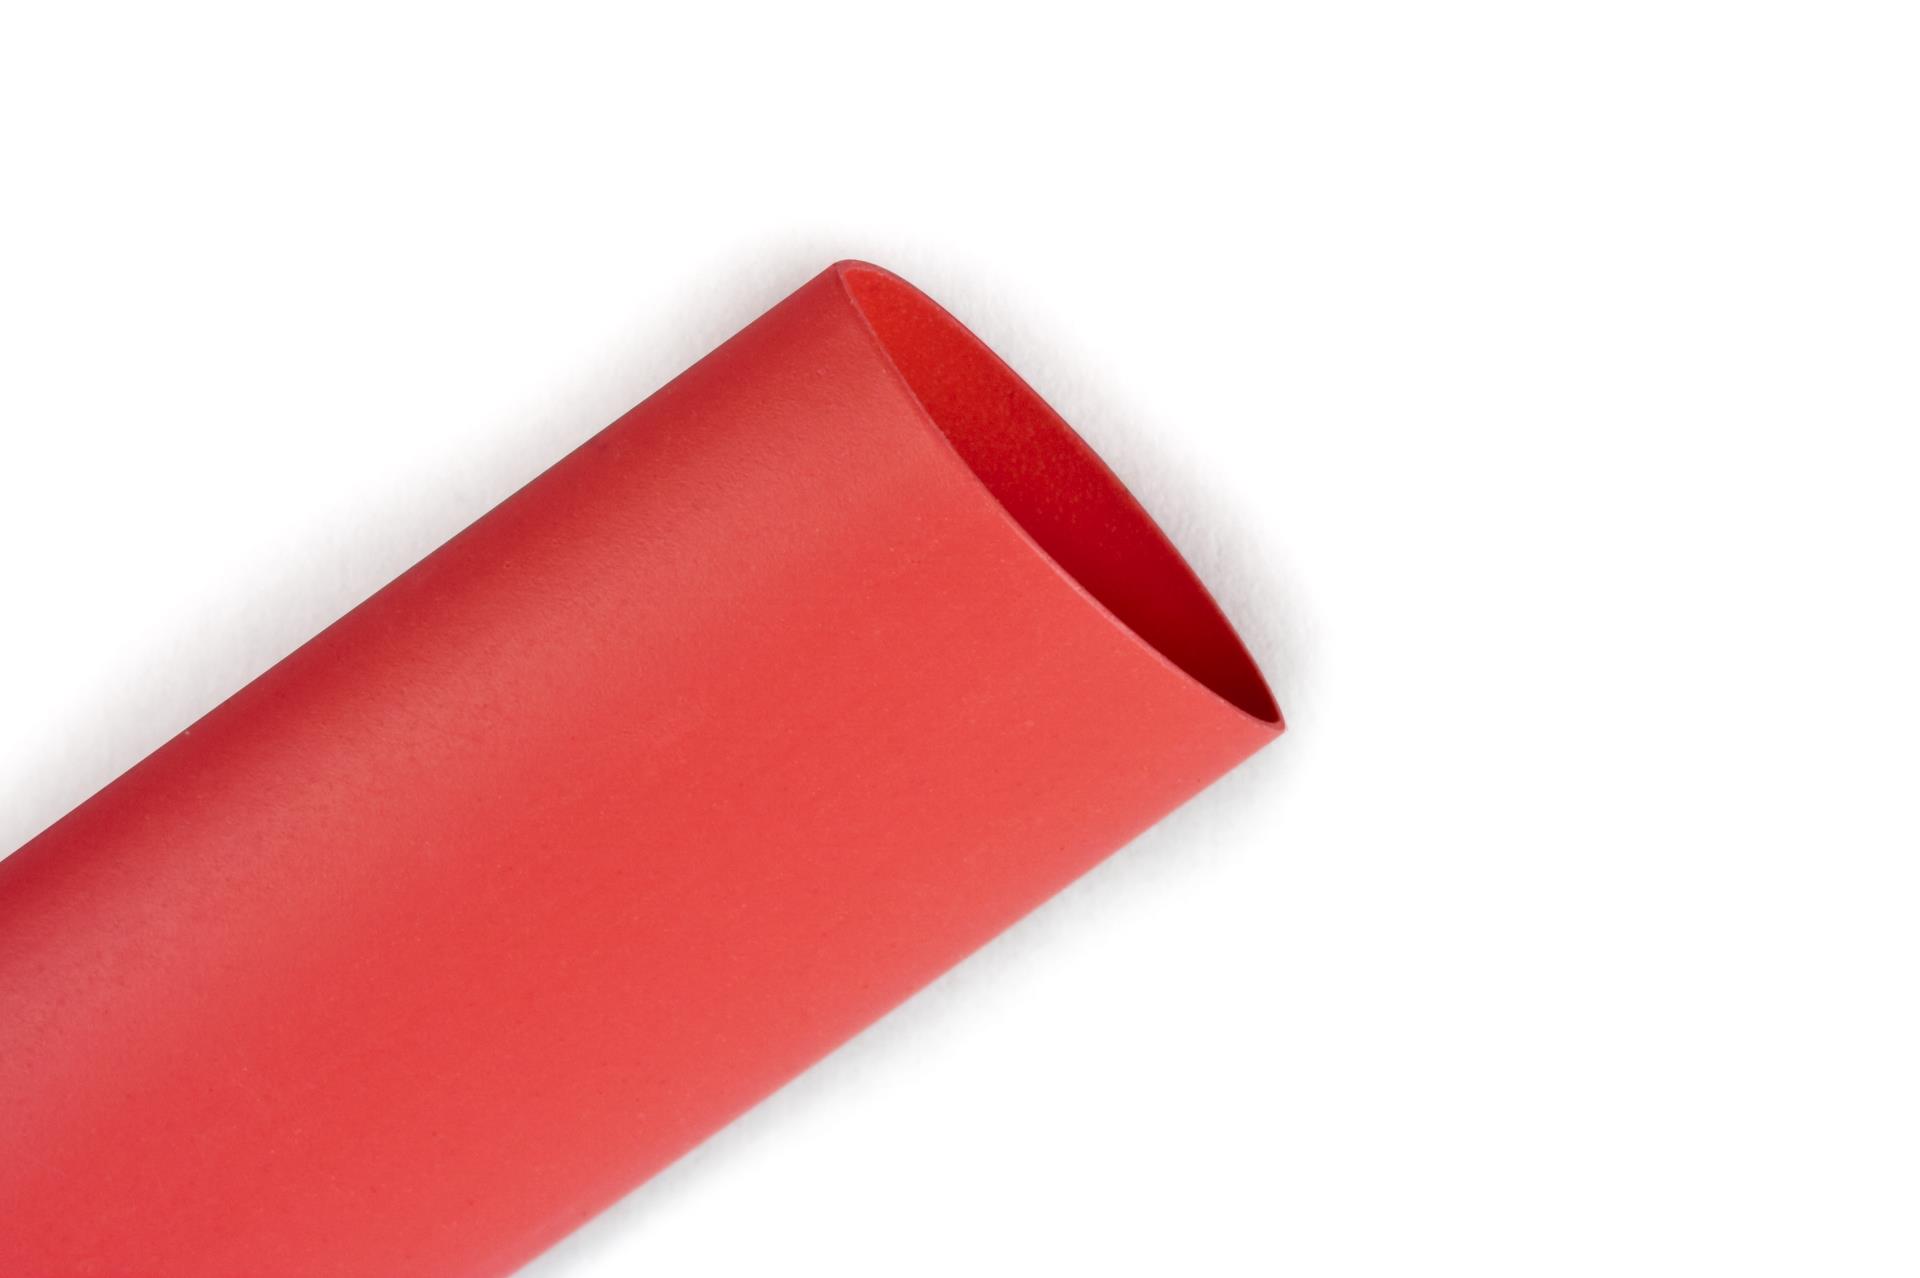 Heat Shrink 3.2mm 125mm 3:1 Black/Red Heatshrink Tubing Tube Sleeving